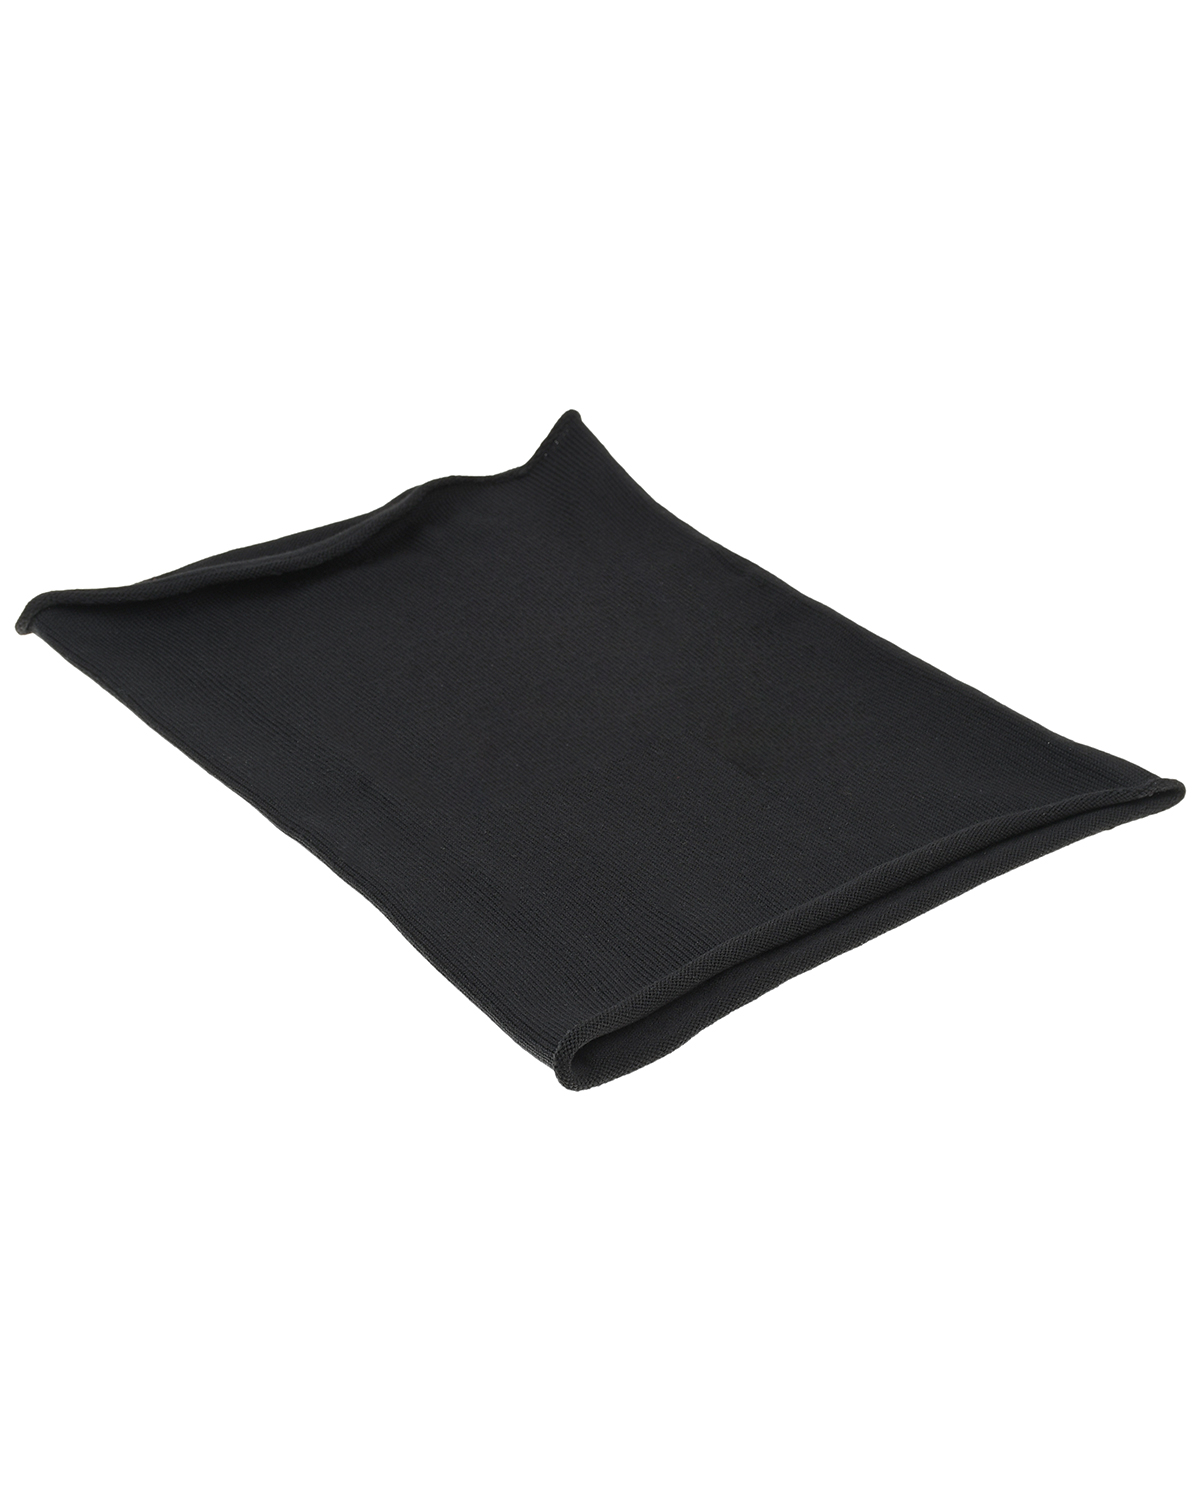 Черный шарф-ворот, 30x40 см Norveg детский, размер unica - фото 1